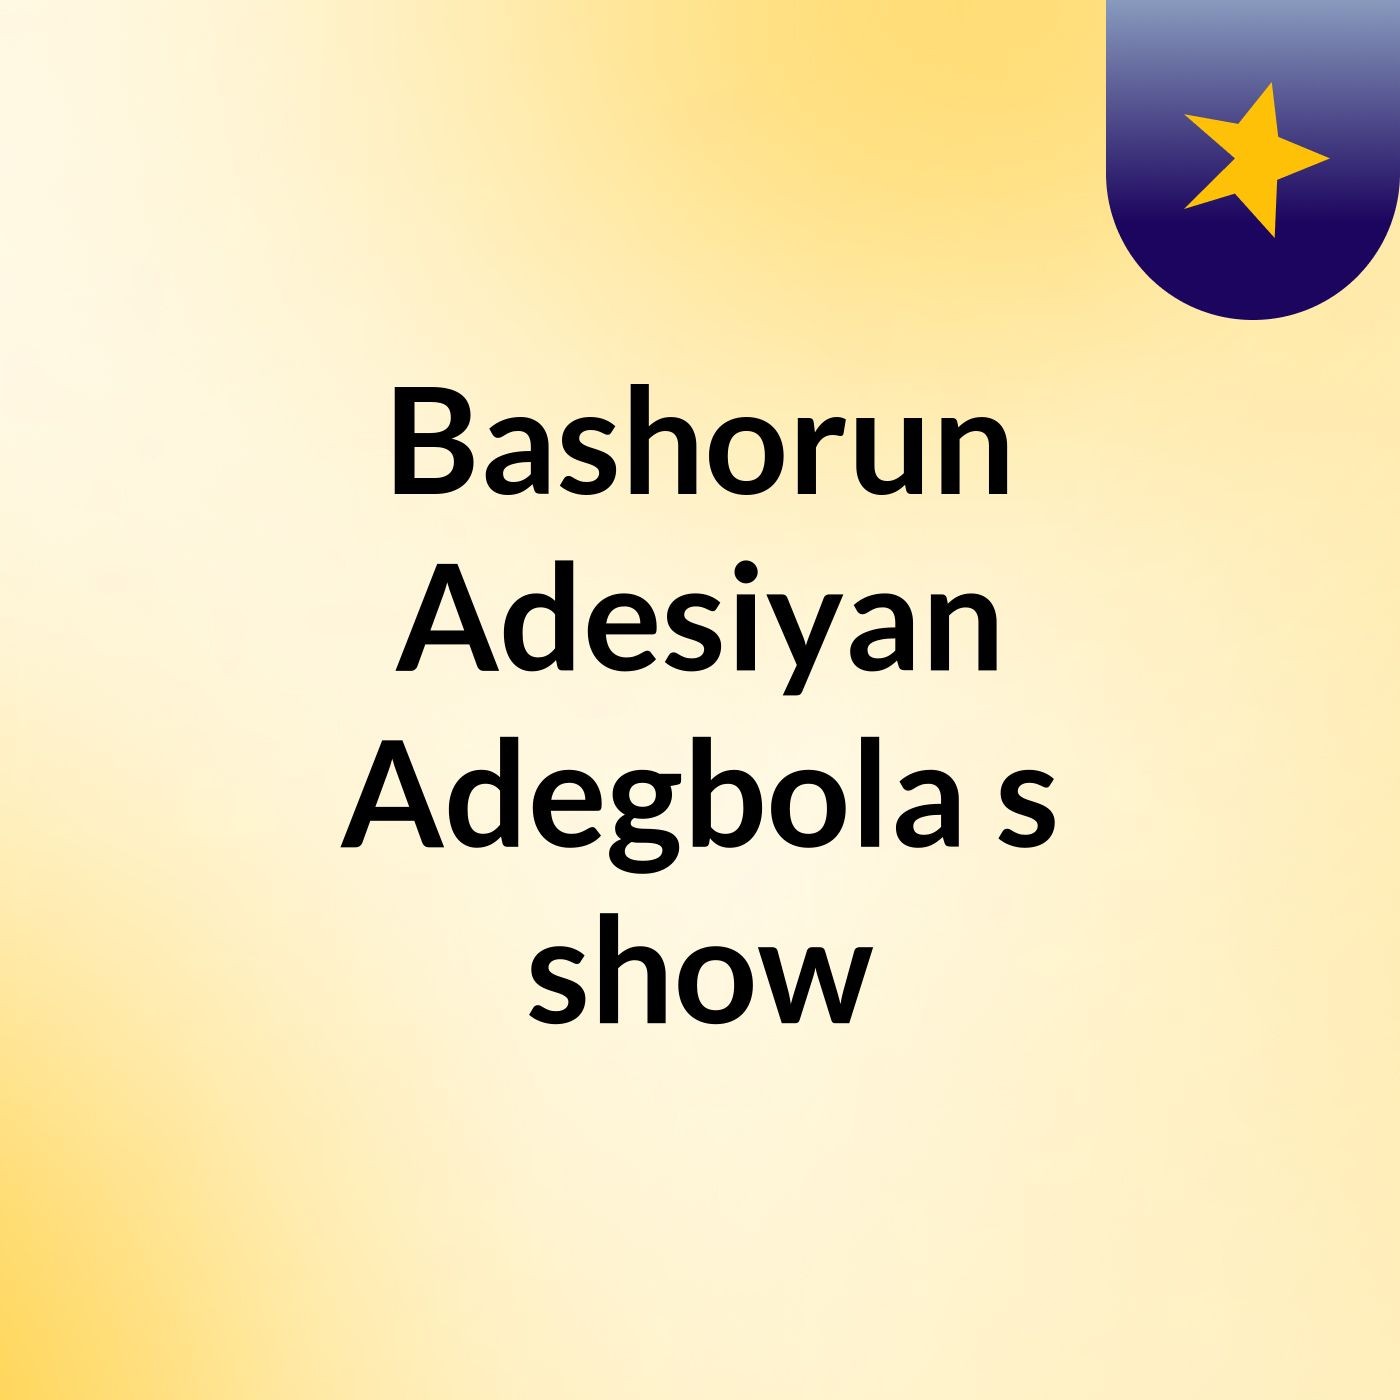 Bashorun Adesiyan Adegbola's show